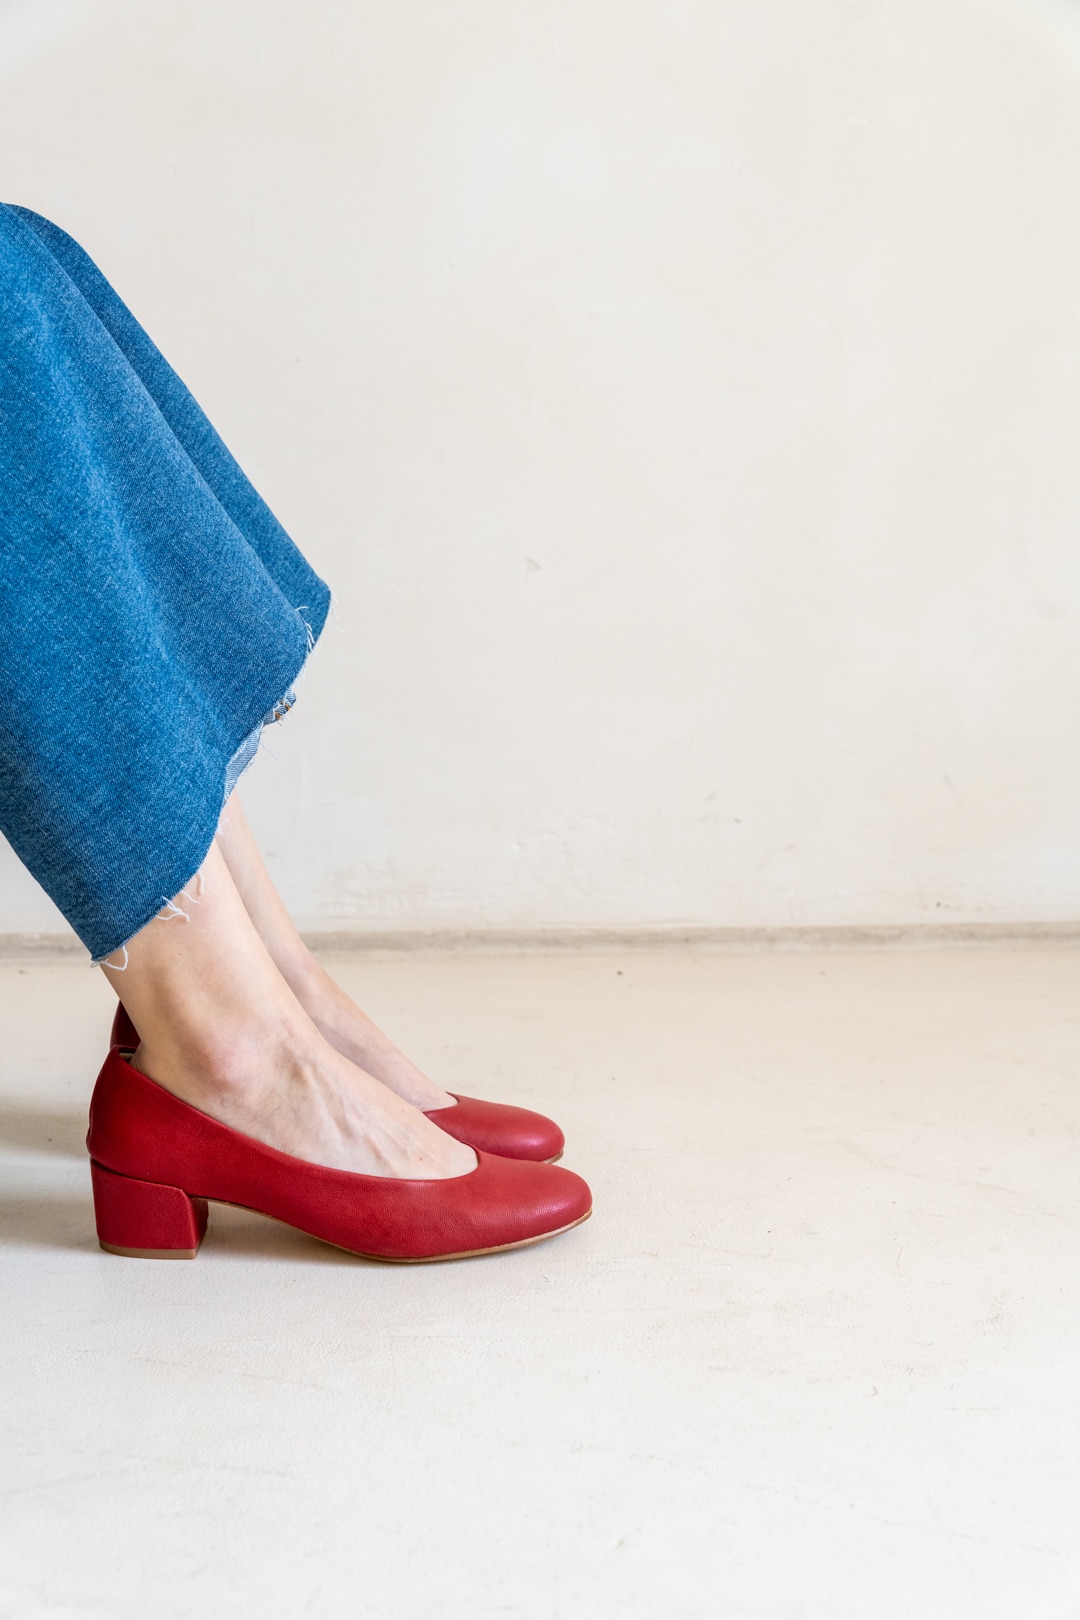 Zapatos Tacon Medio Rojos Mujer4